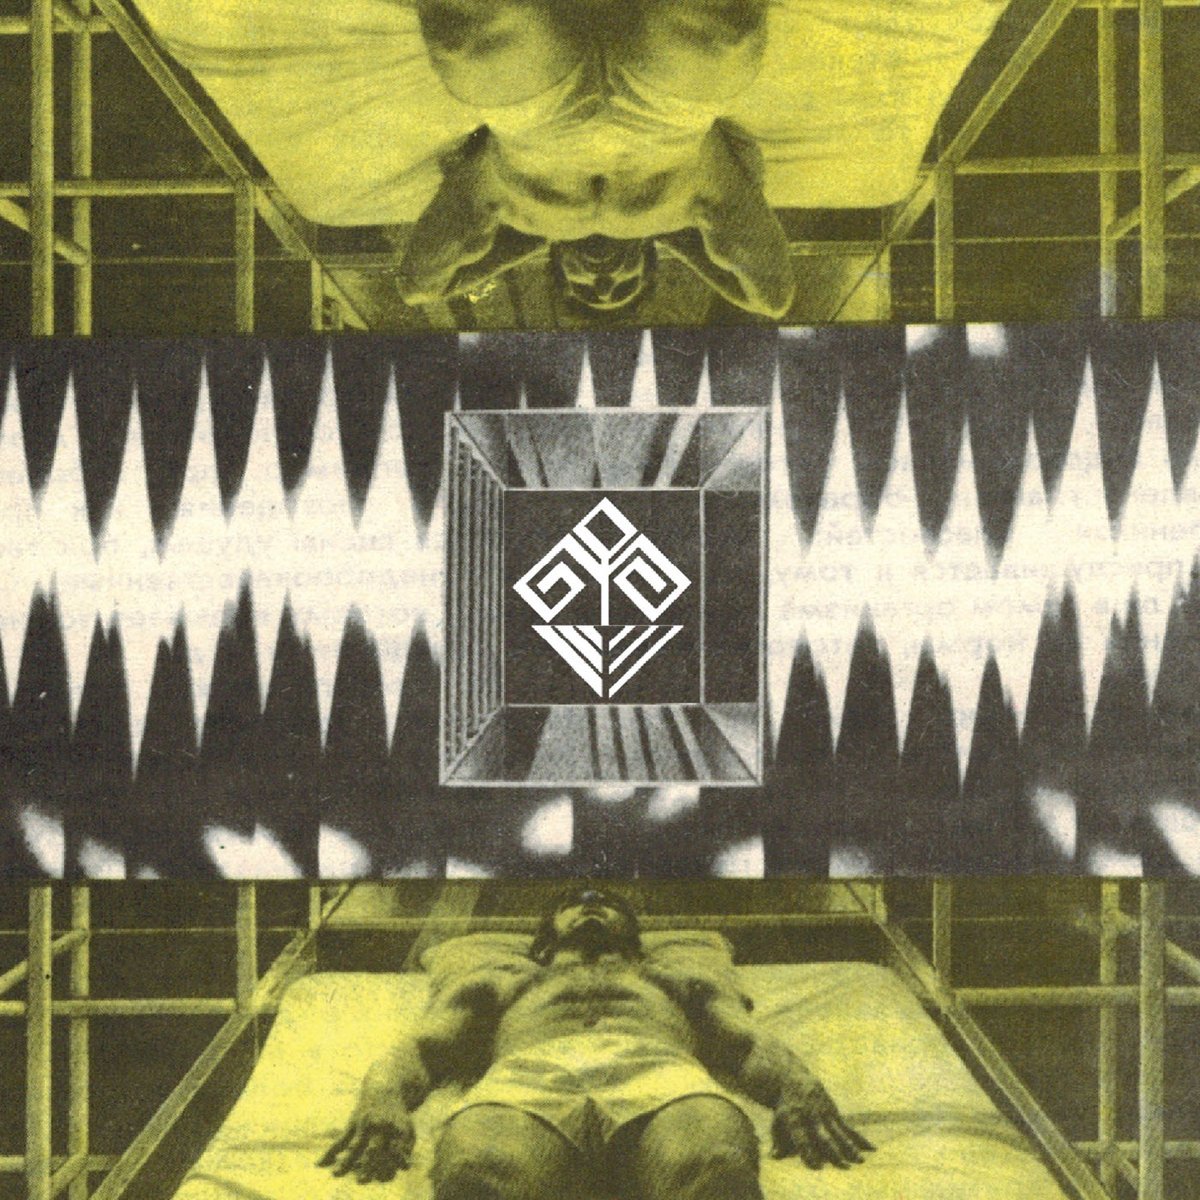 Genoc1de & nScape - Babylon Take Me Away @ 'Various Artists - Double Your Displeasure' album (170bpm, drum & bass)